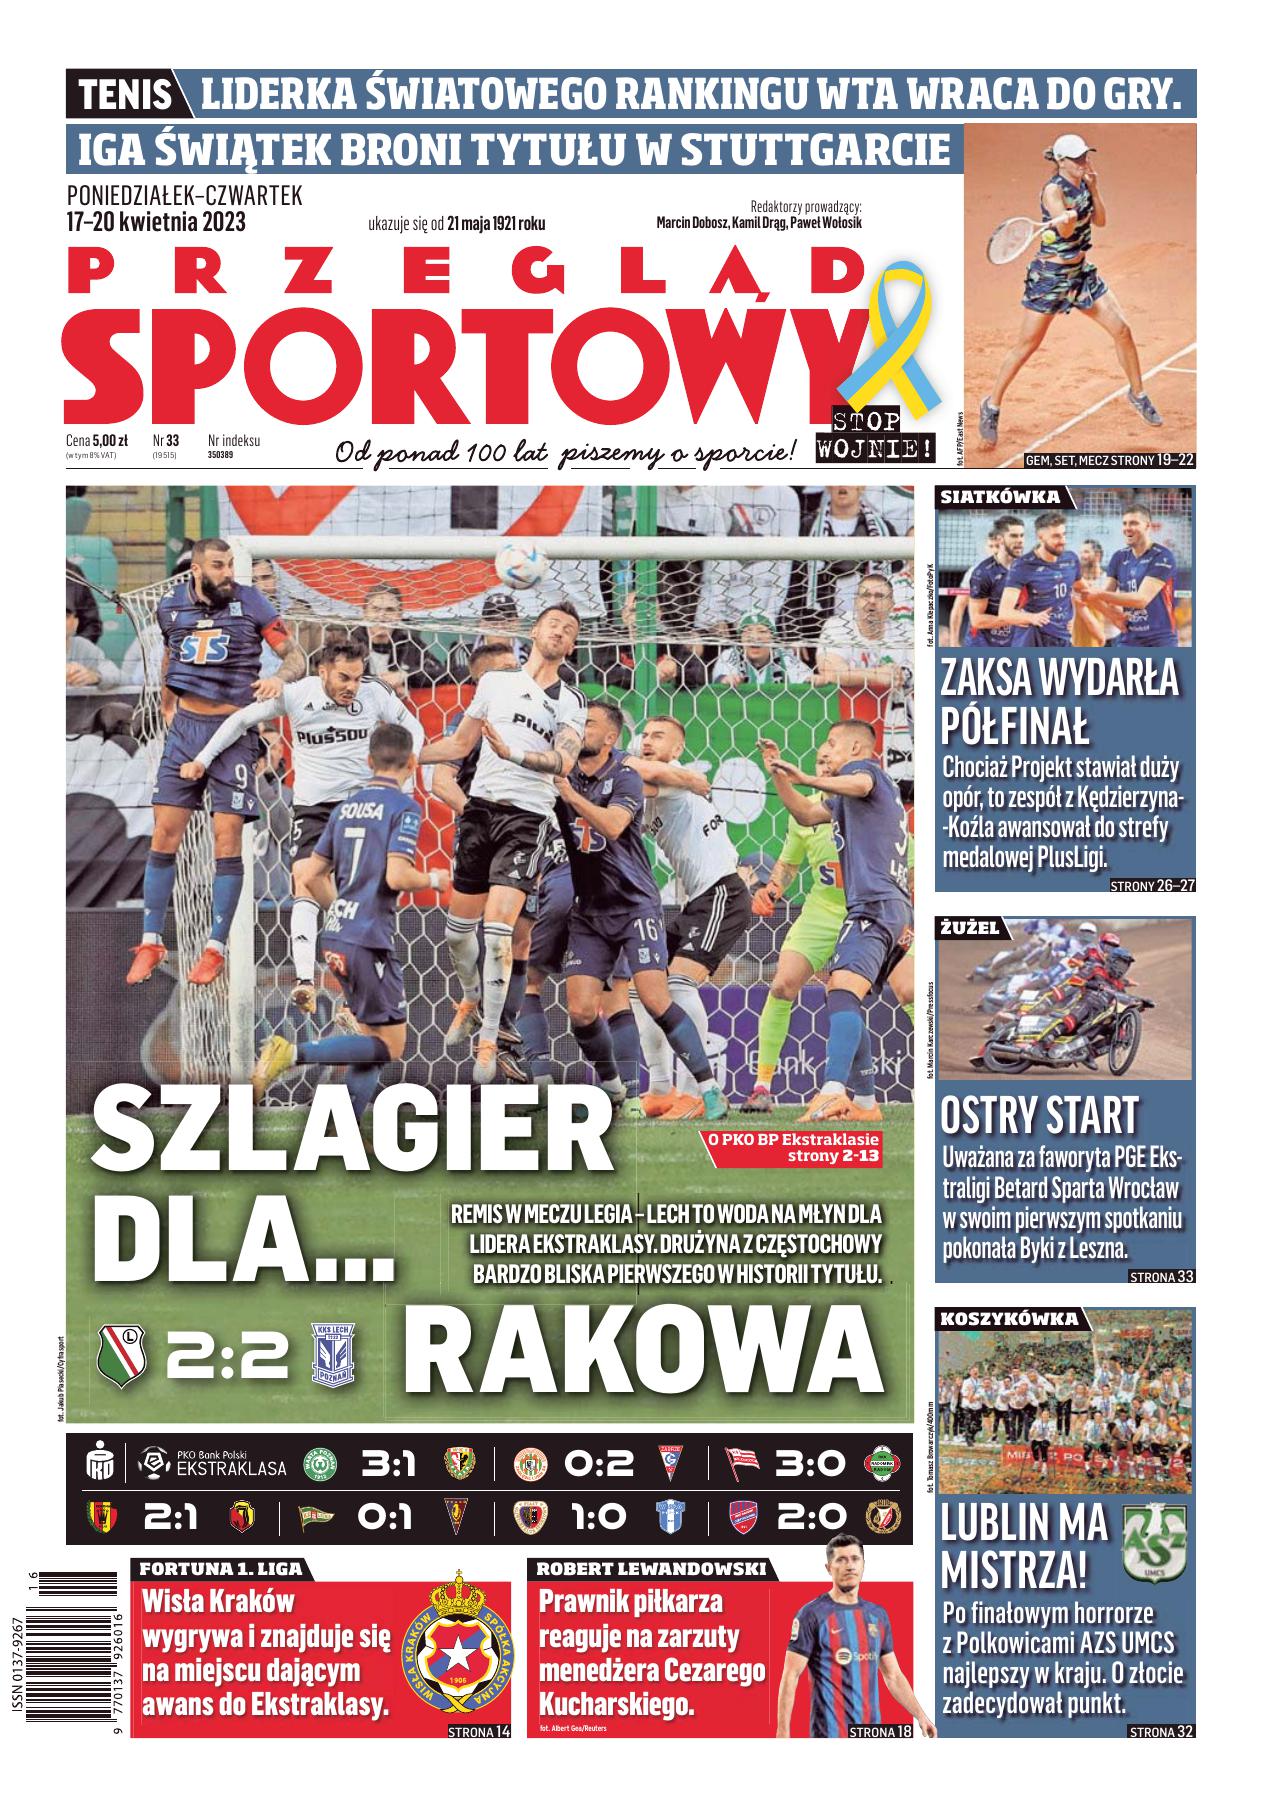 Przegląd Sportowy po meczu Legia Warszawa - Lech Poznań 2:2 (16.04.2023)